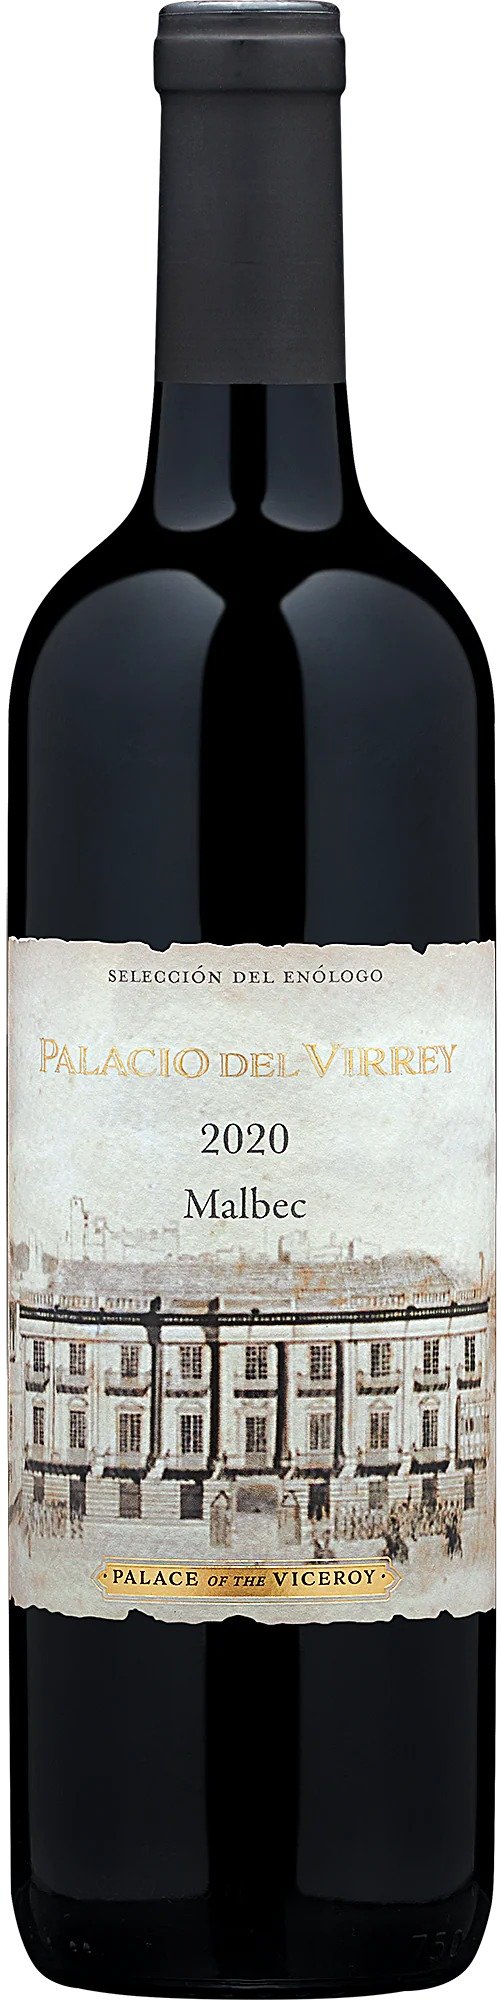 2020 Palacio del Virrey Malbec